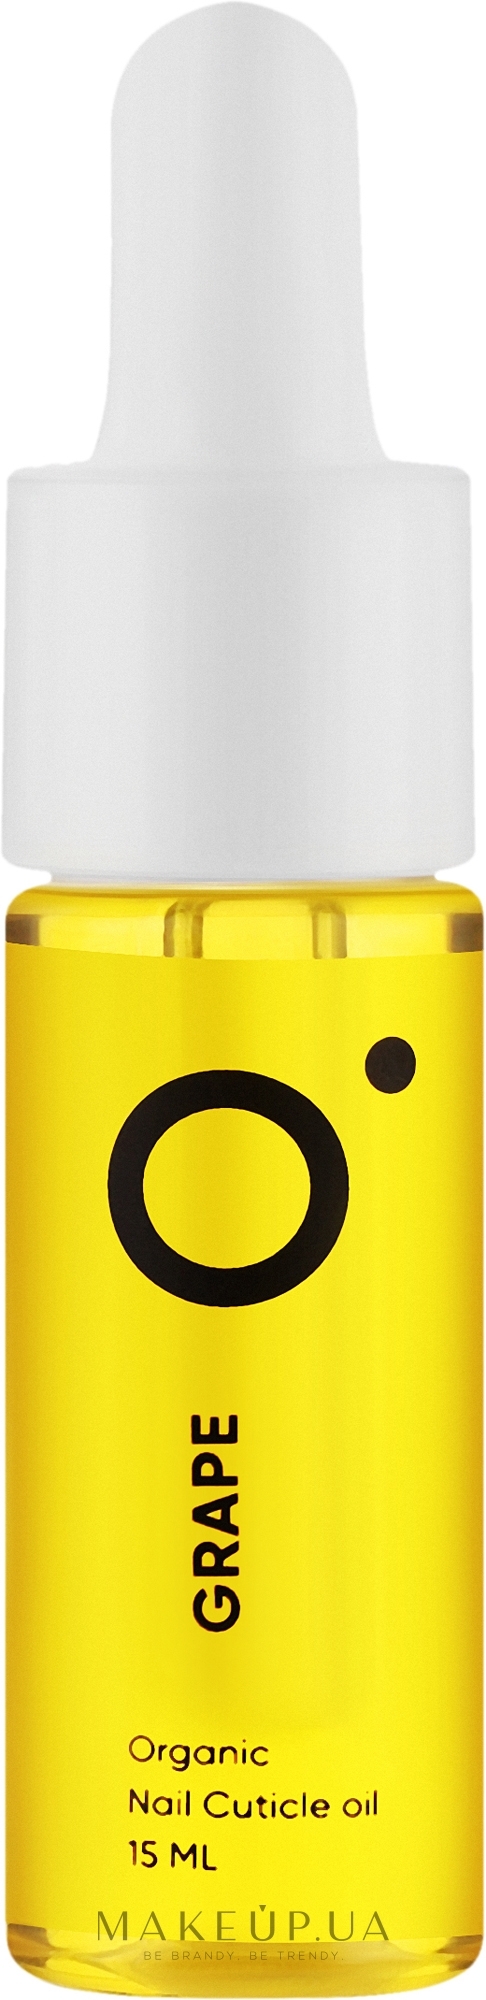 Олія для кутикули "Виноград" - Nails Of The Day Organic Nail Cuticle Oil — фото 15ml